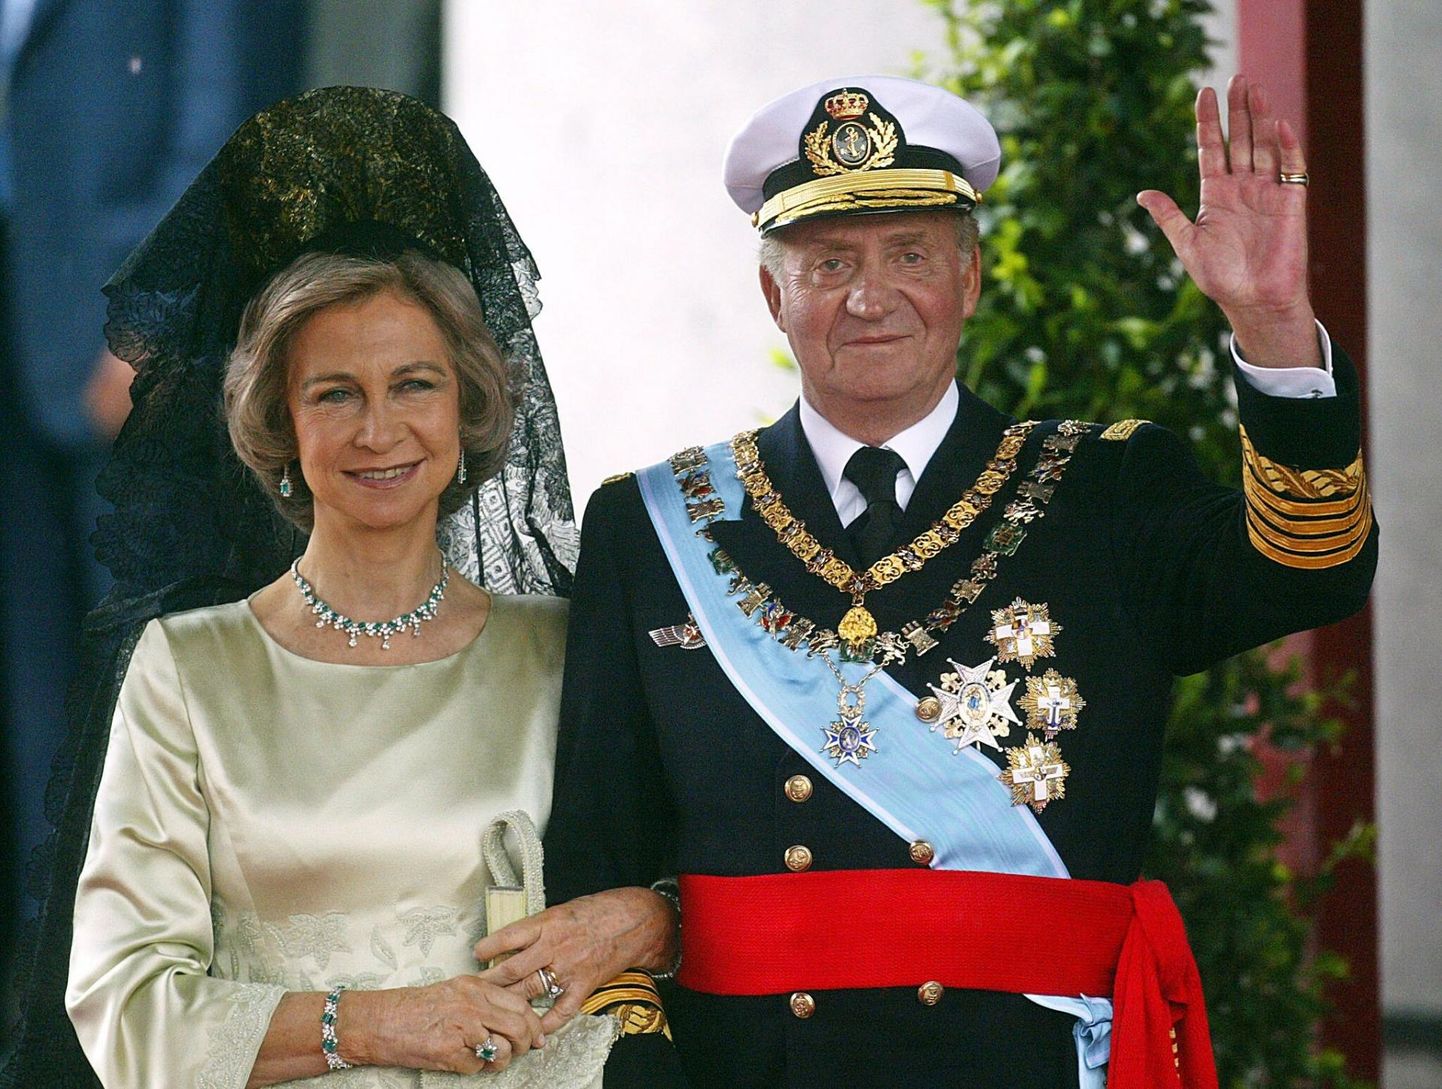 Kuninganna Sofia ja kuningas Juan Carlos.  FOTO: Pedro Armestre / AFP / Scanpix